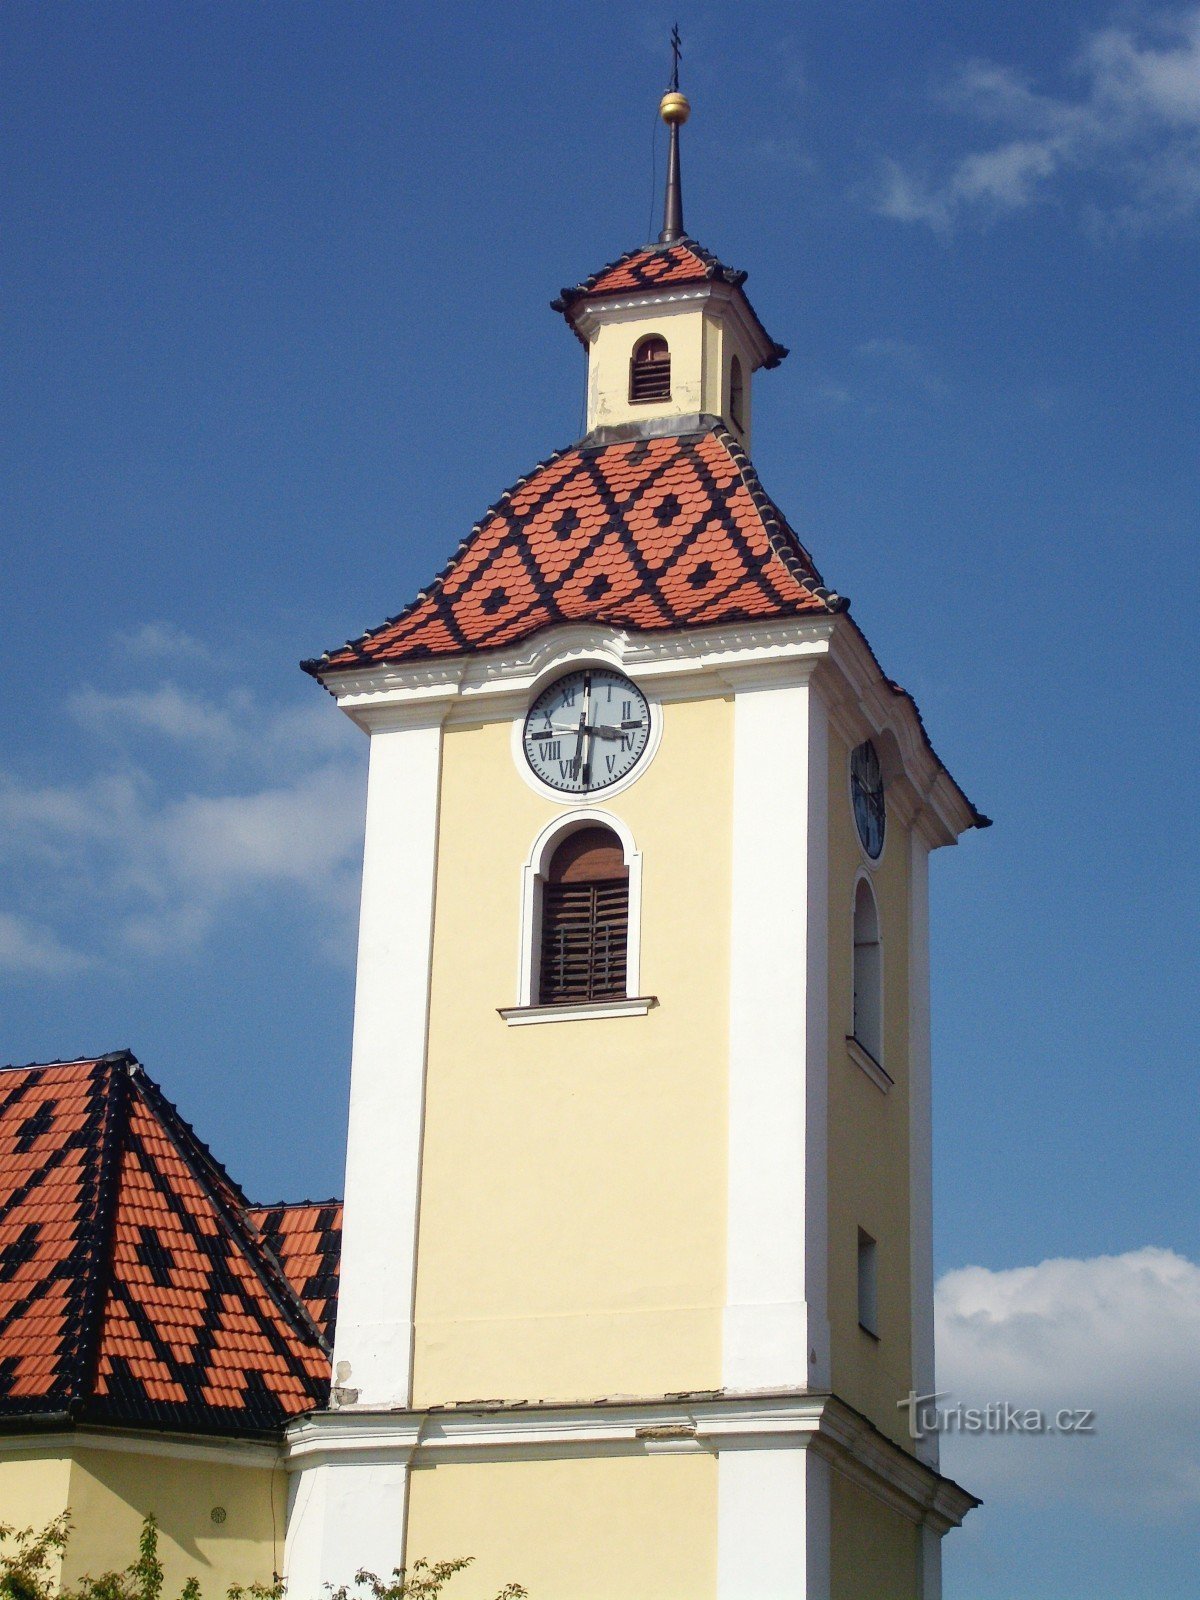 Kunovice (osoitteessa U. Hradiště) - Pyhän Nikolauksen kirkko Pietari ja Paavali